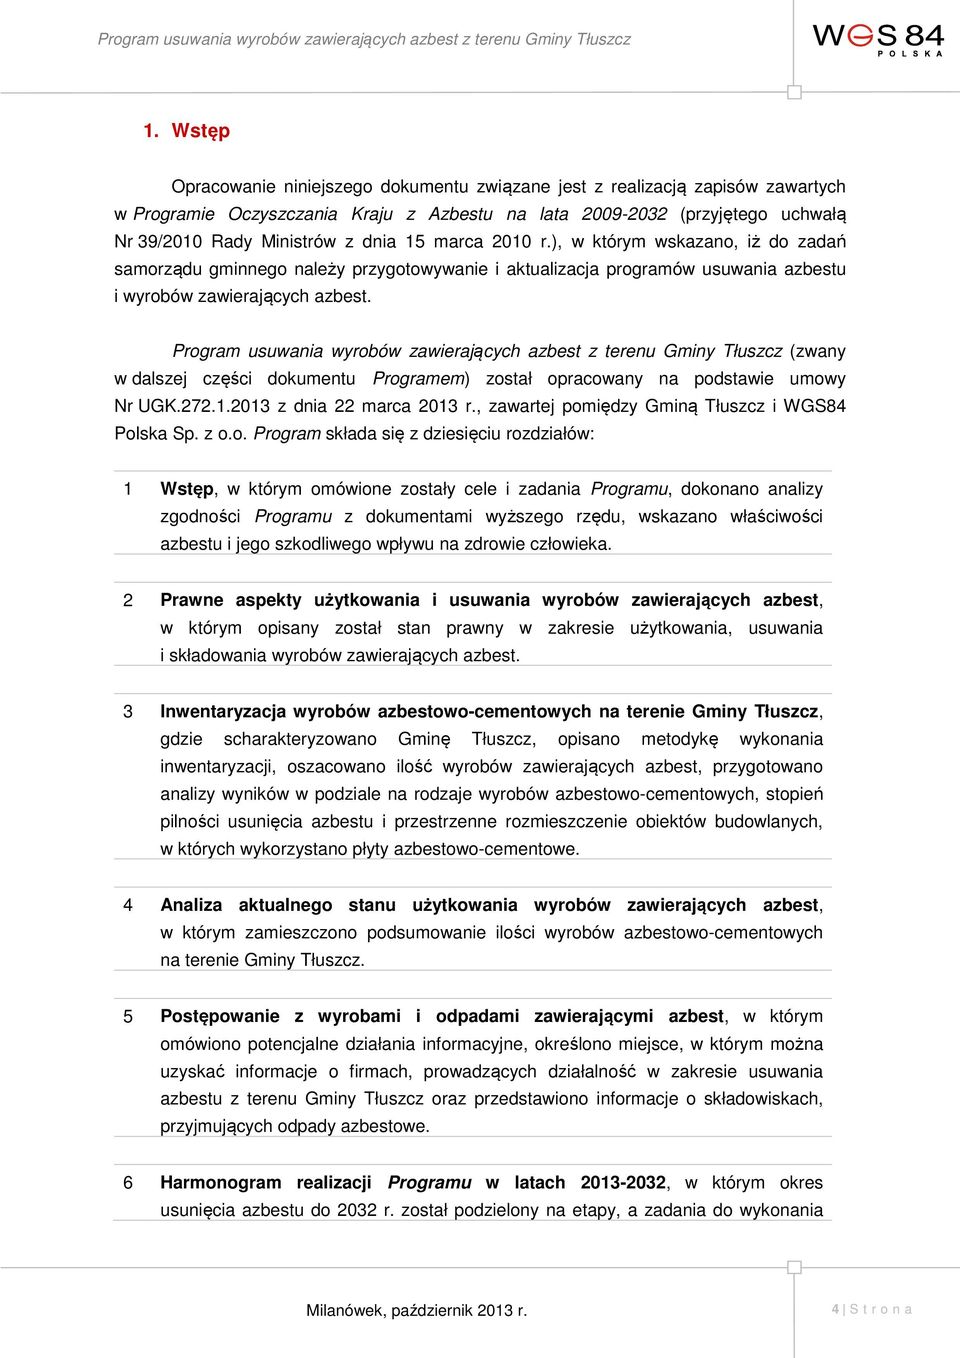 Program usuwania wyrobów zawierających azbest z terenu Gminy Tłuszcz (zwany w dalszej części dokumentu Programem) został opracowany na podstawie umowy Nr UGK.272.1.2013 z dnia 22 marca 2013 r.